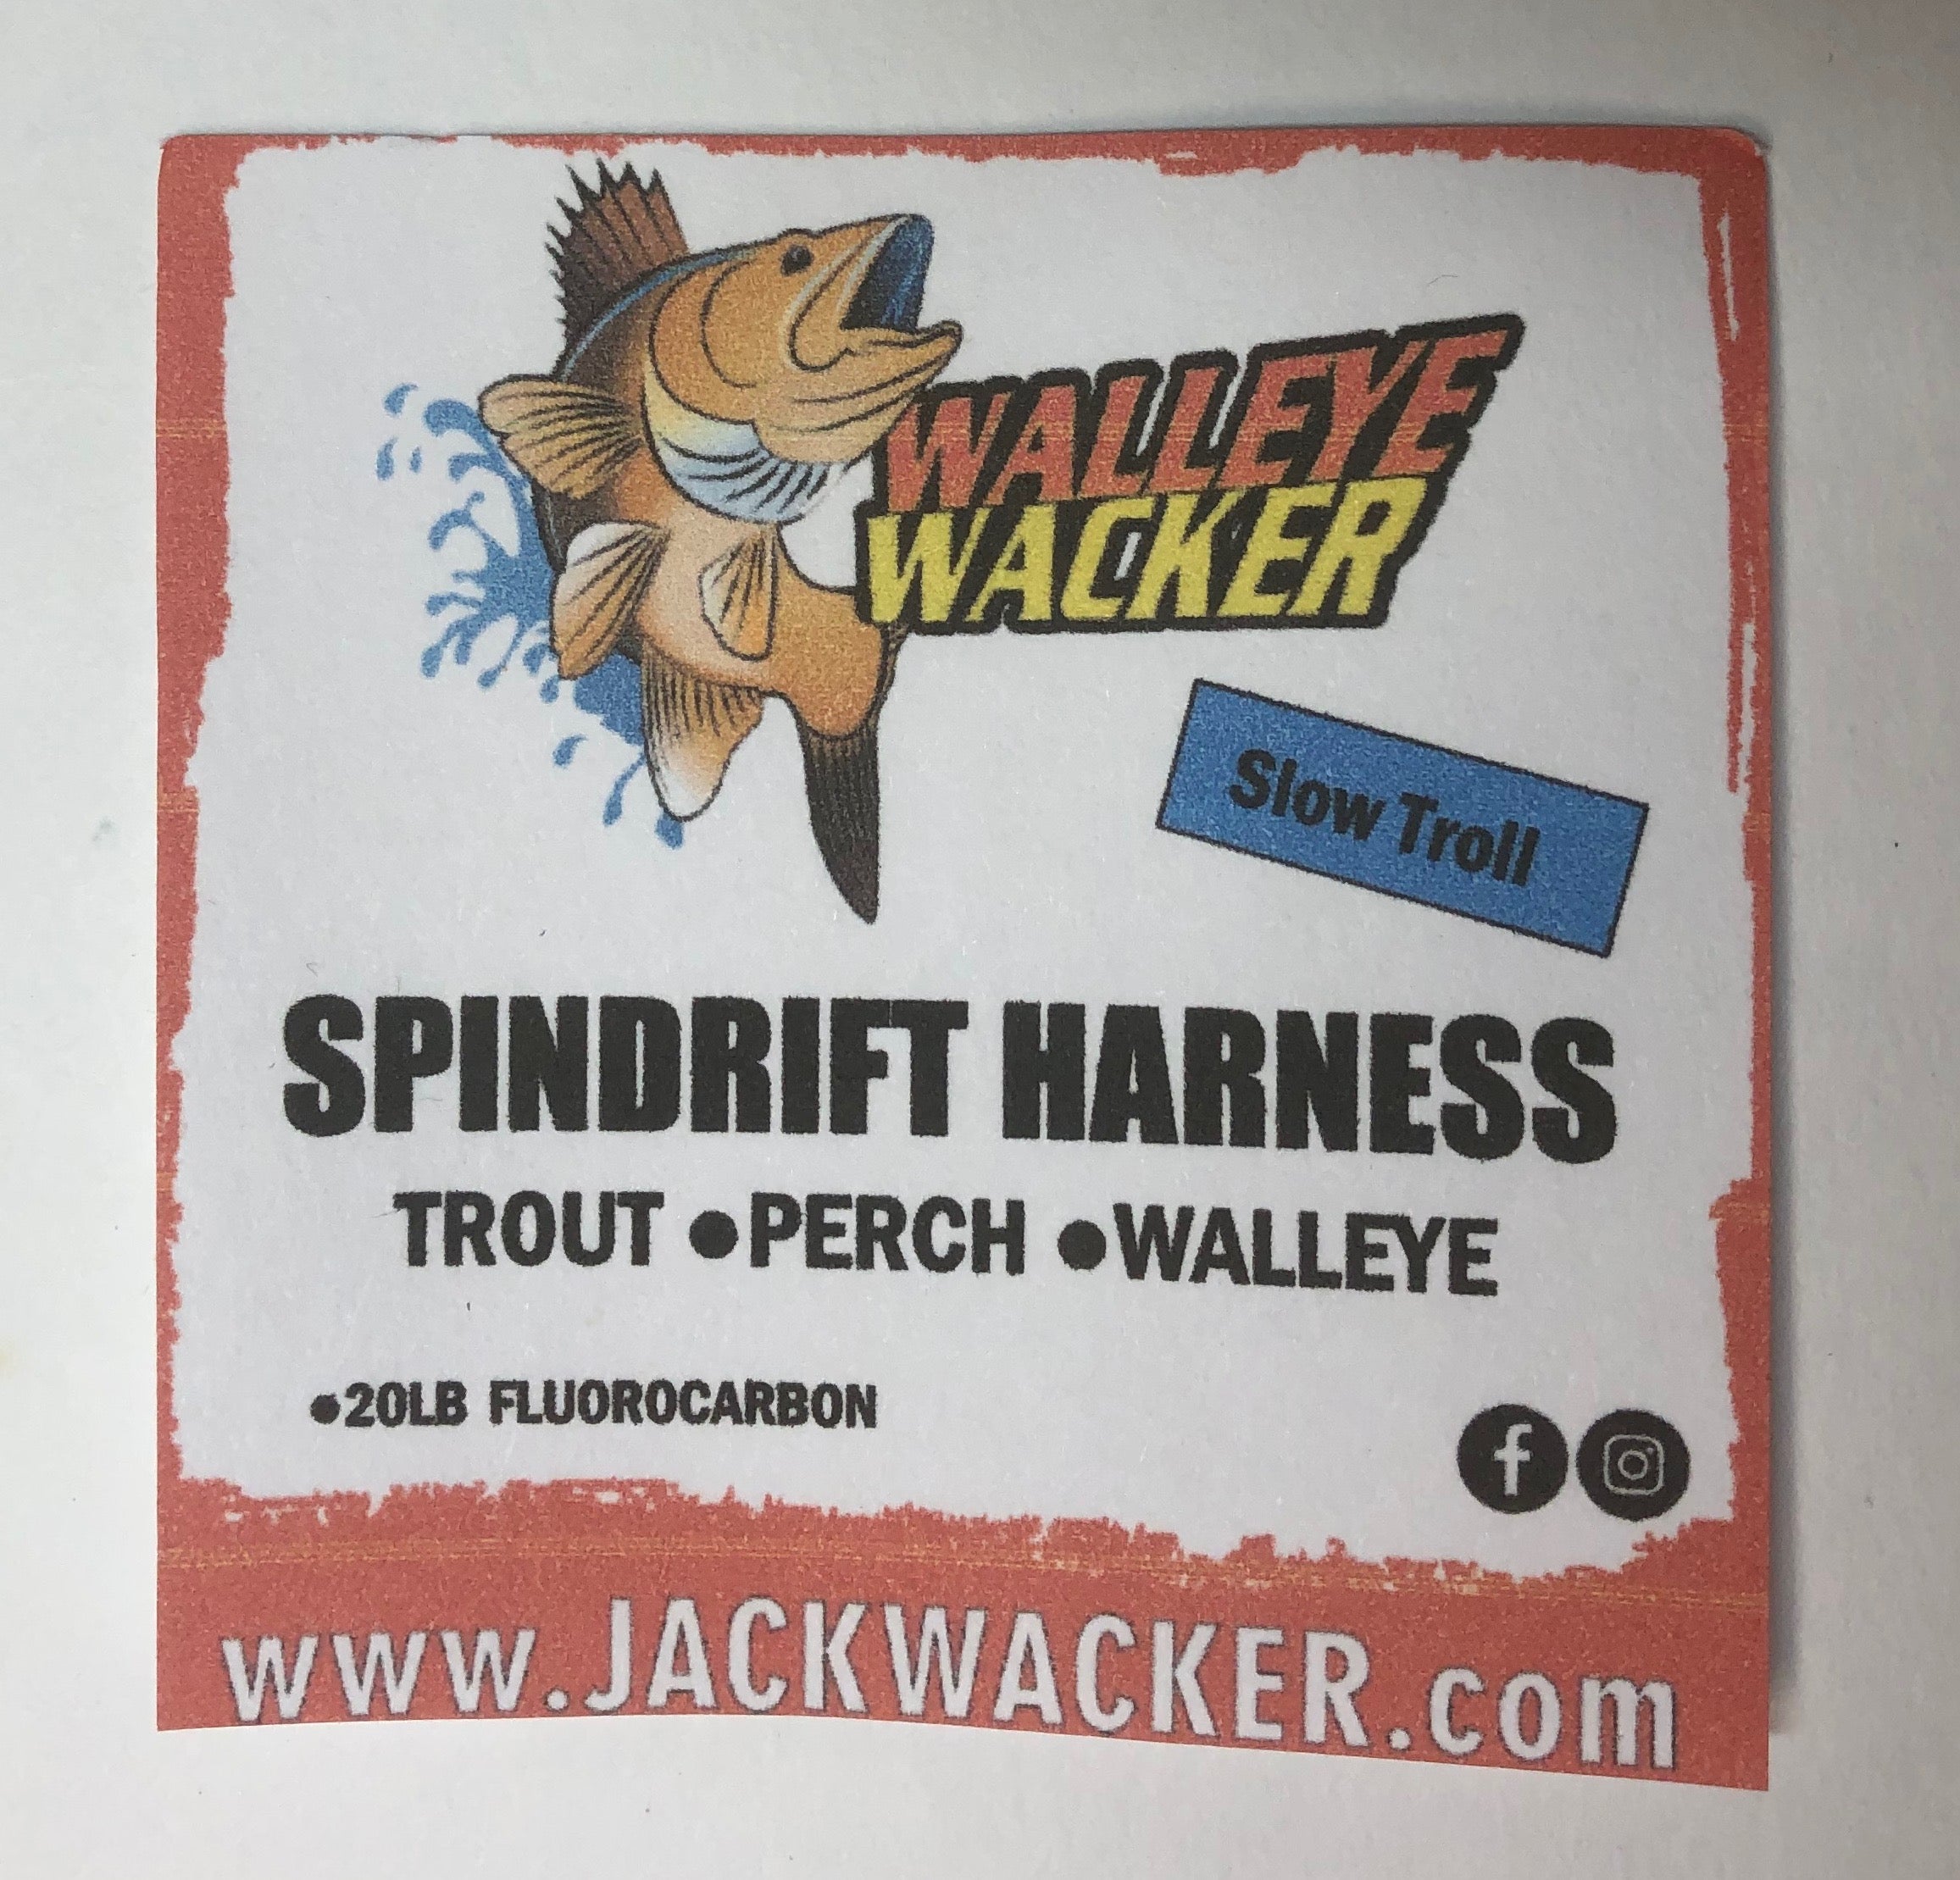 Walleye Wacker Spindrift Harness – Jack Wacker Fishing Gear Co.